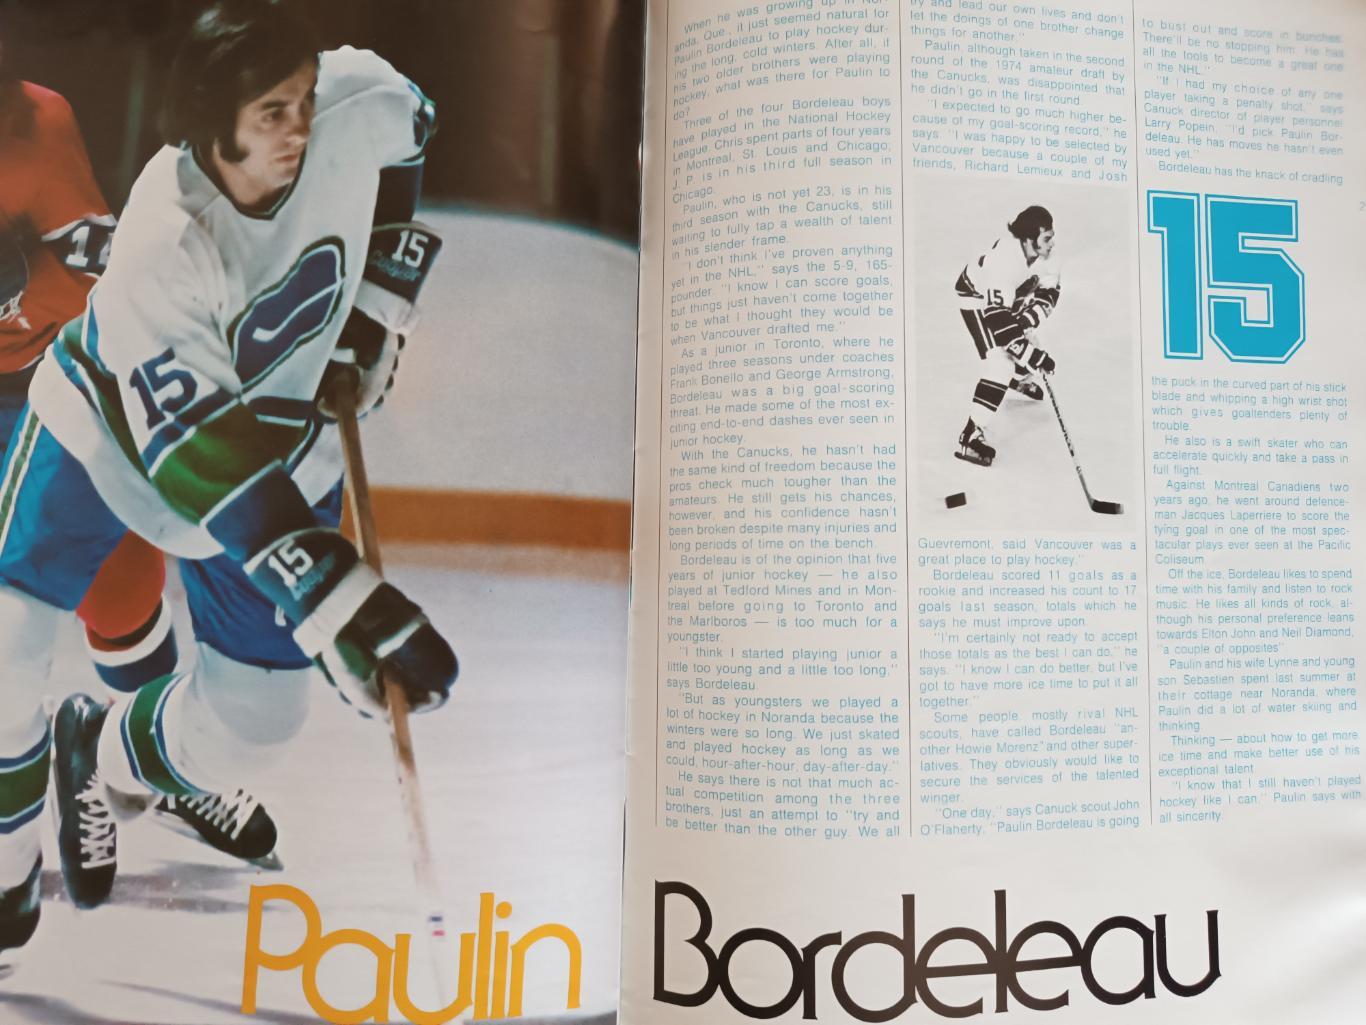 ХОККЕЙ АЛЬБОМ ЕЖЕГОДНИК НХЛ ВАНКУВЕР 1975-76 NHL ACTION ALBUM VANCOUVER CANUCKS 5